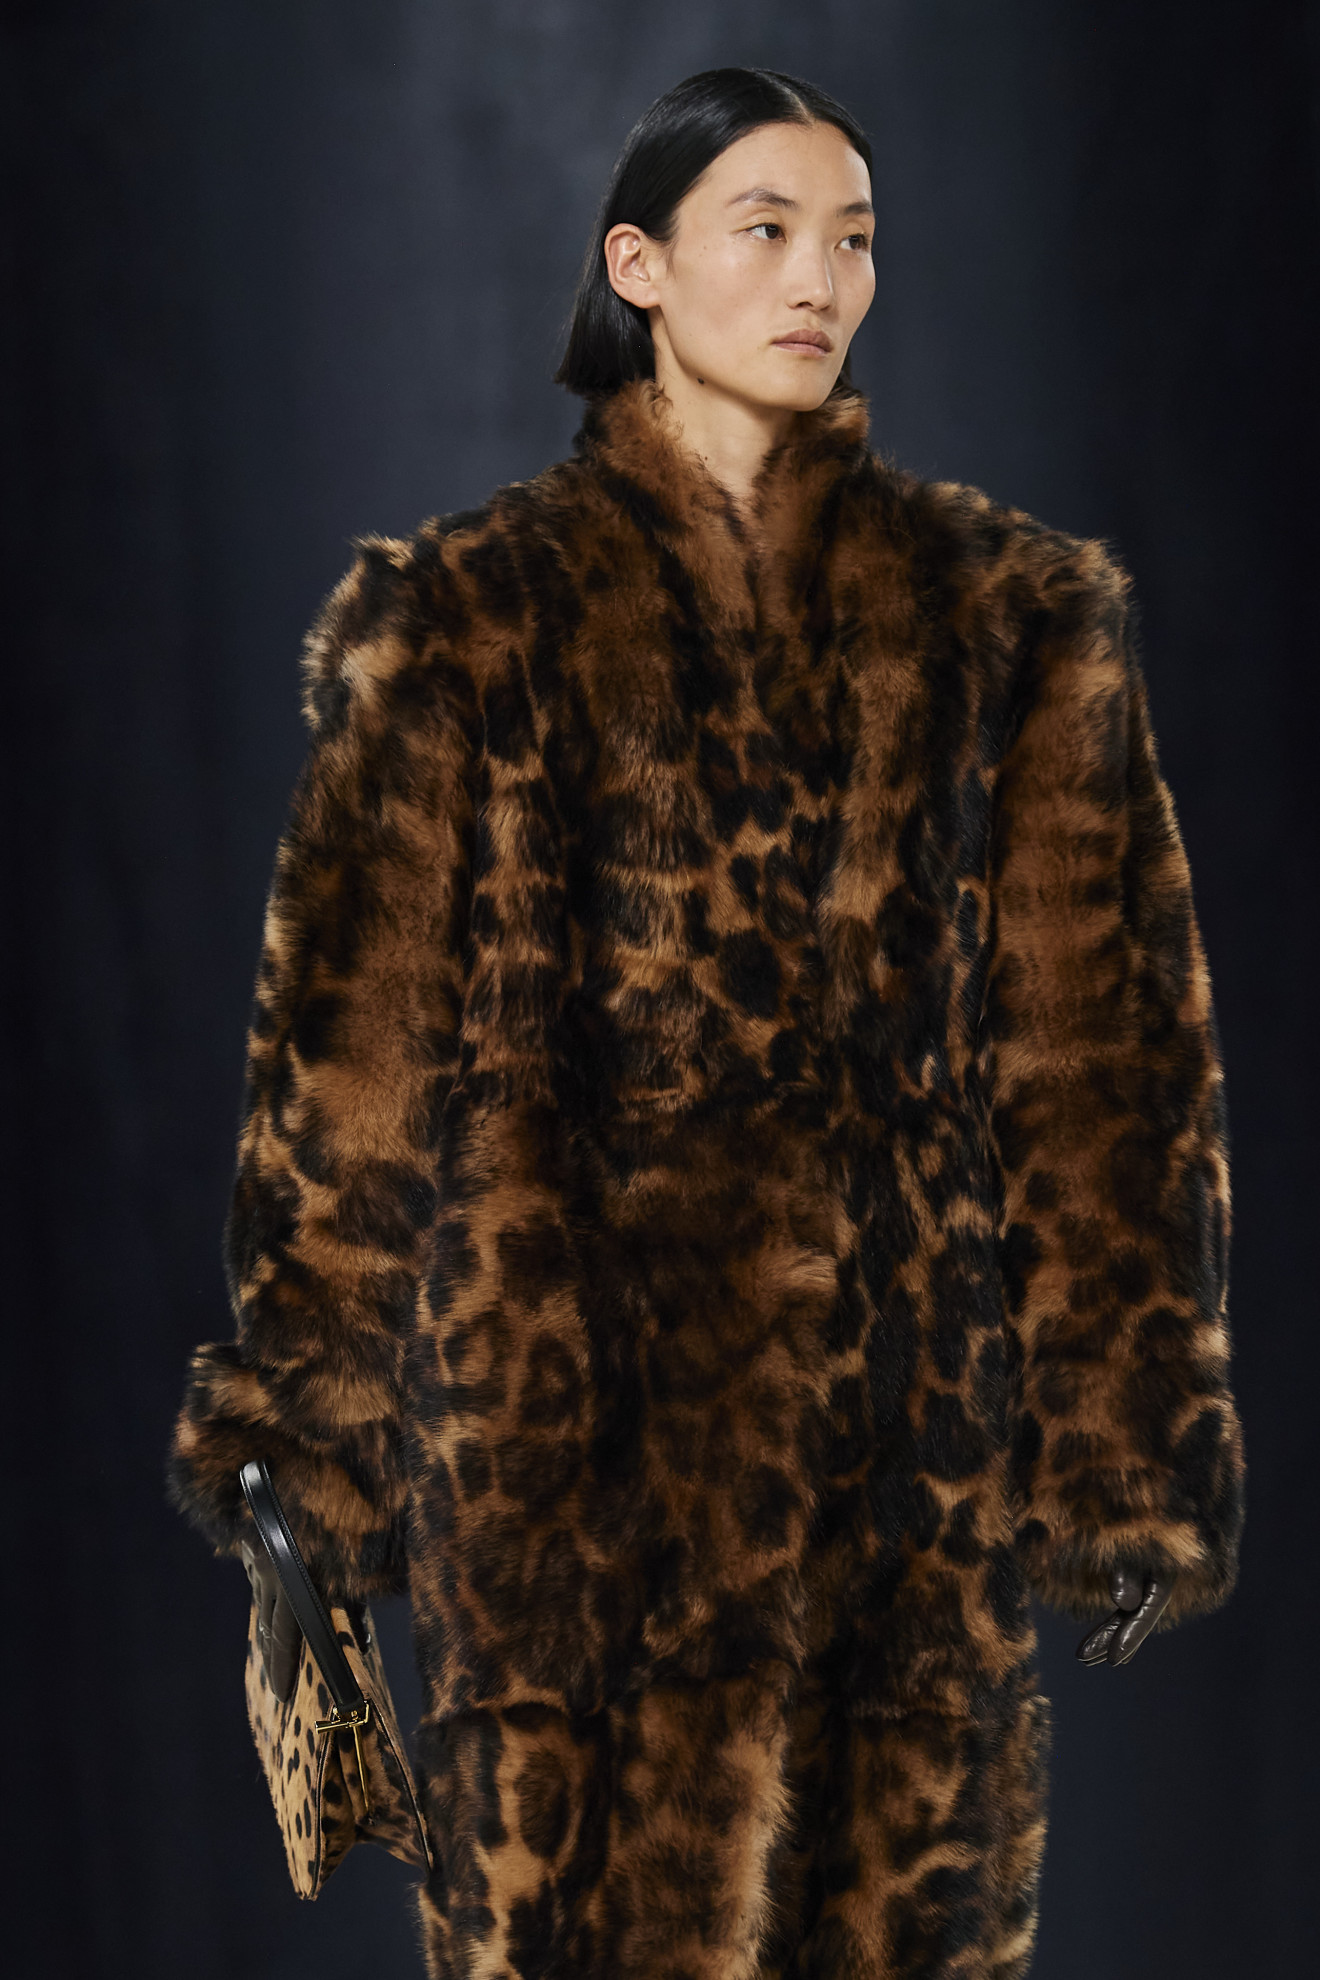 Не проходите мимо: леопардовое пальто снова в тренде